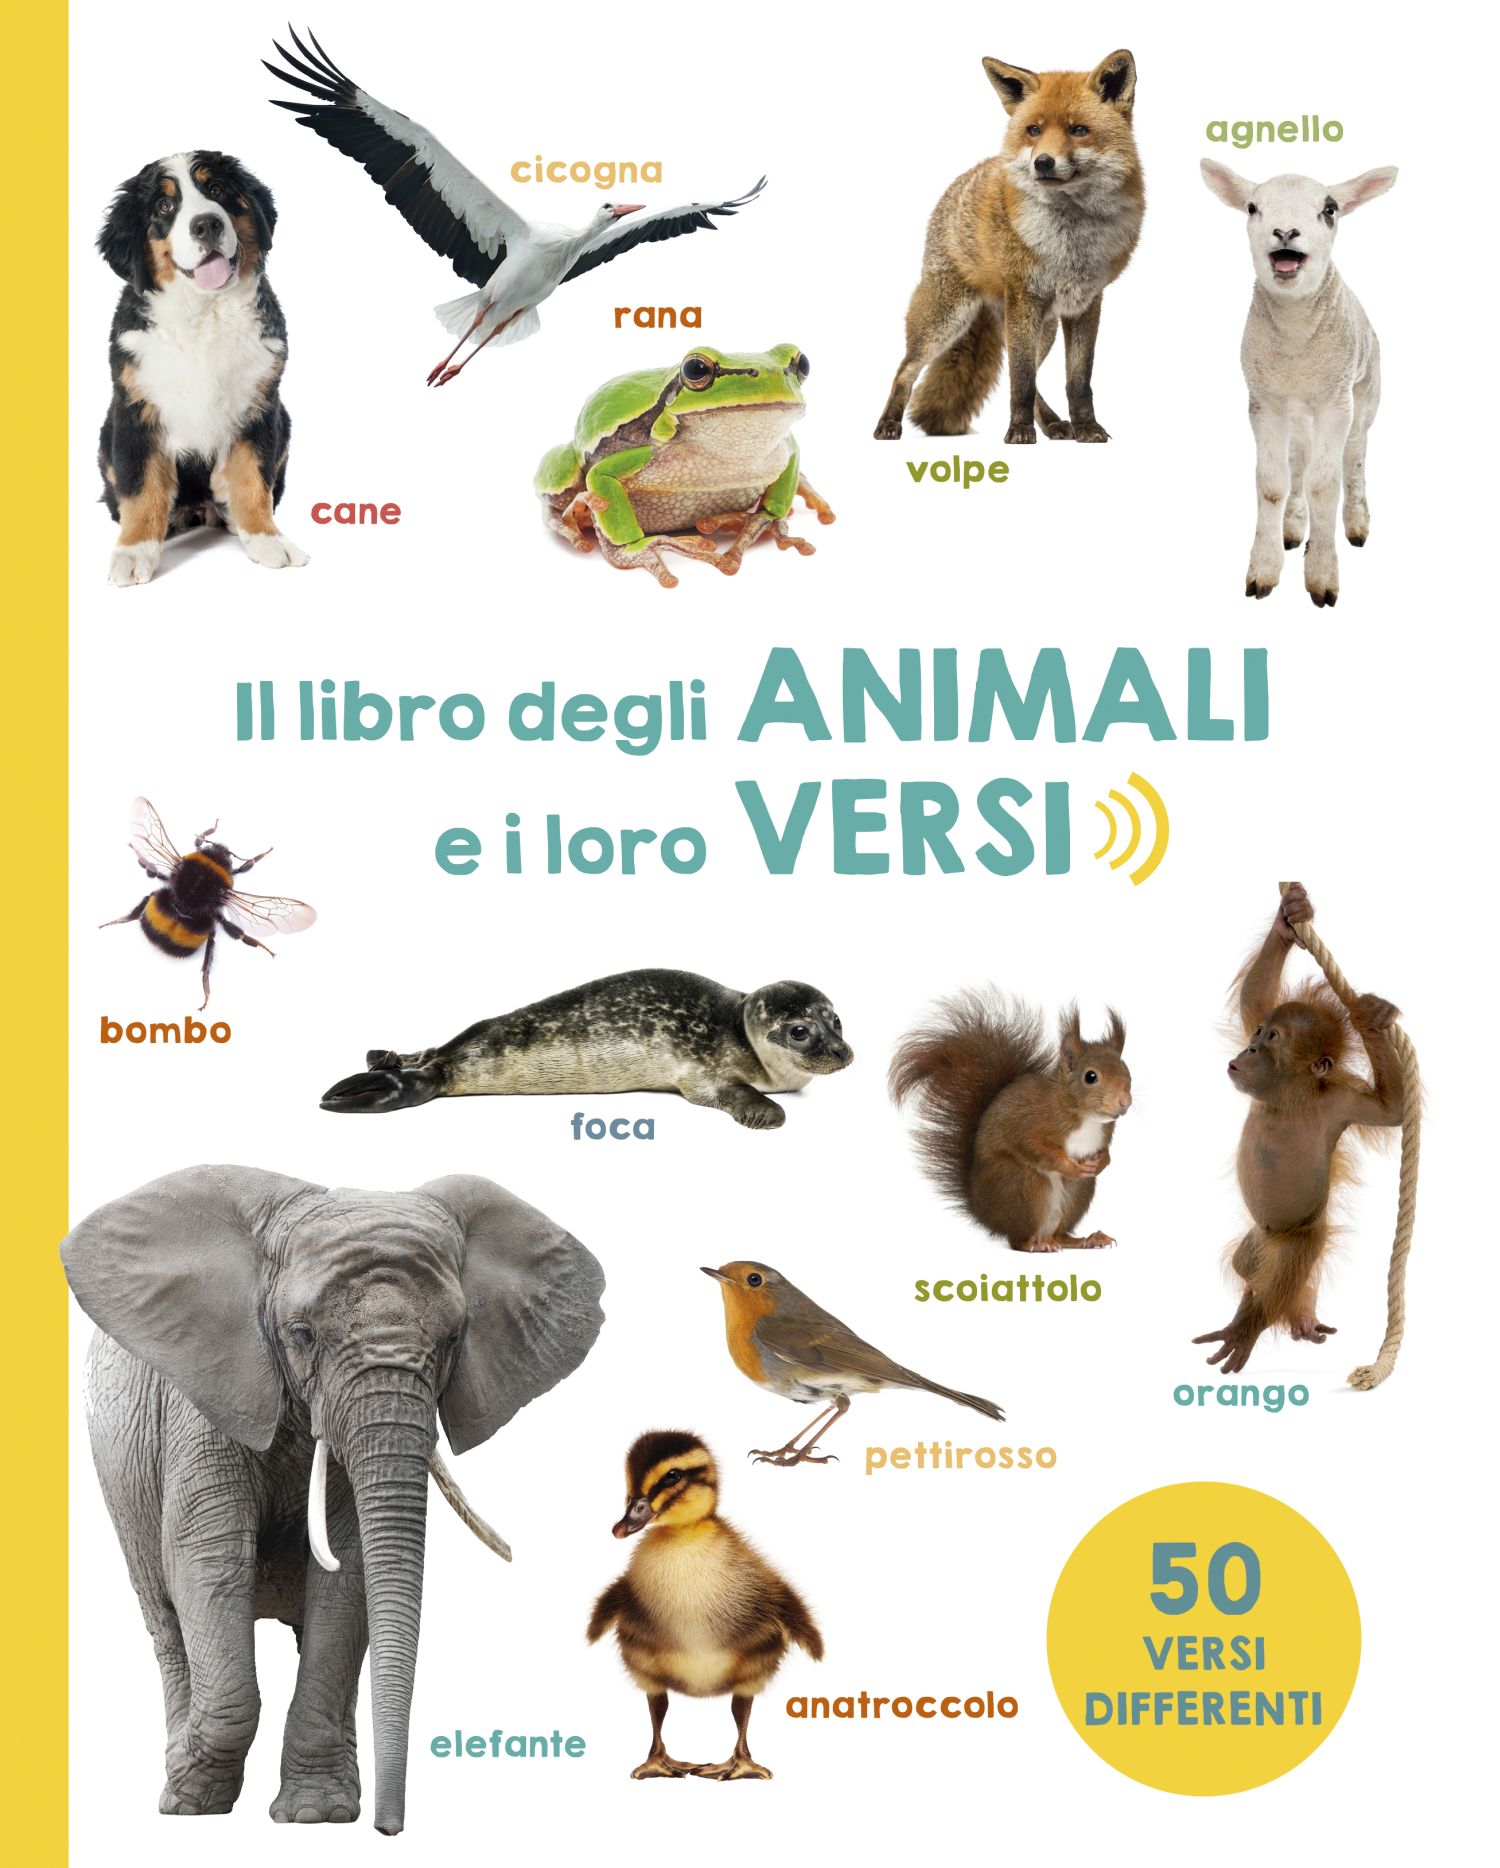 Il libro degli animali e i loro versi, Picarona